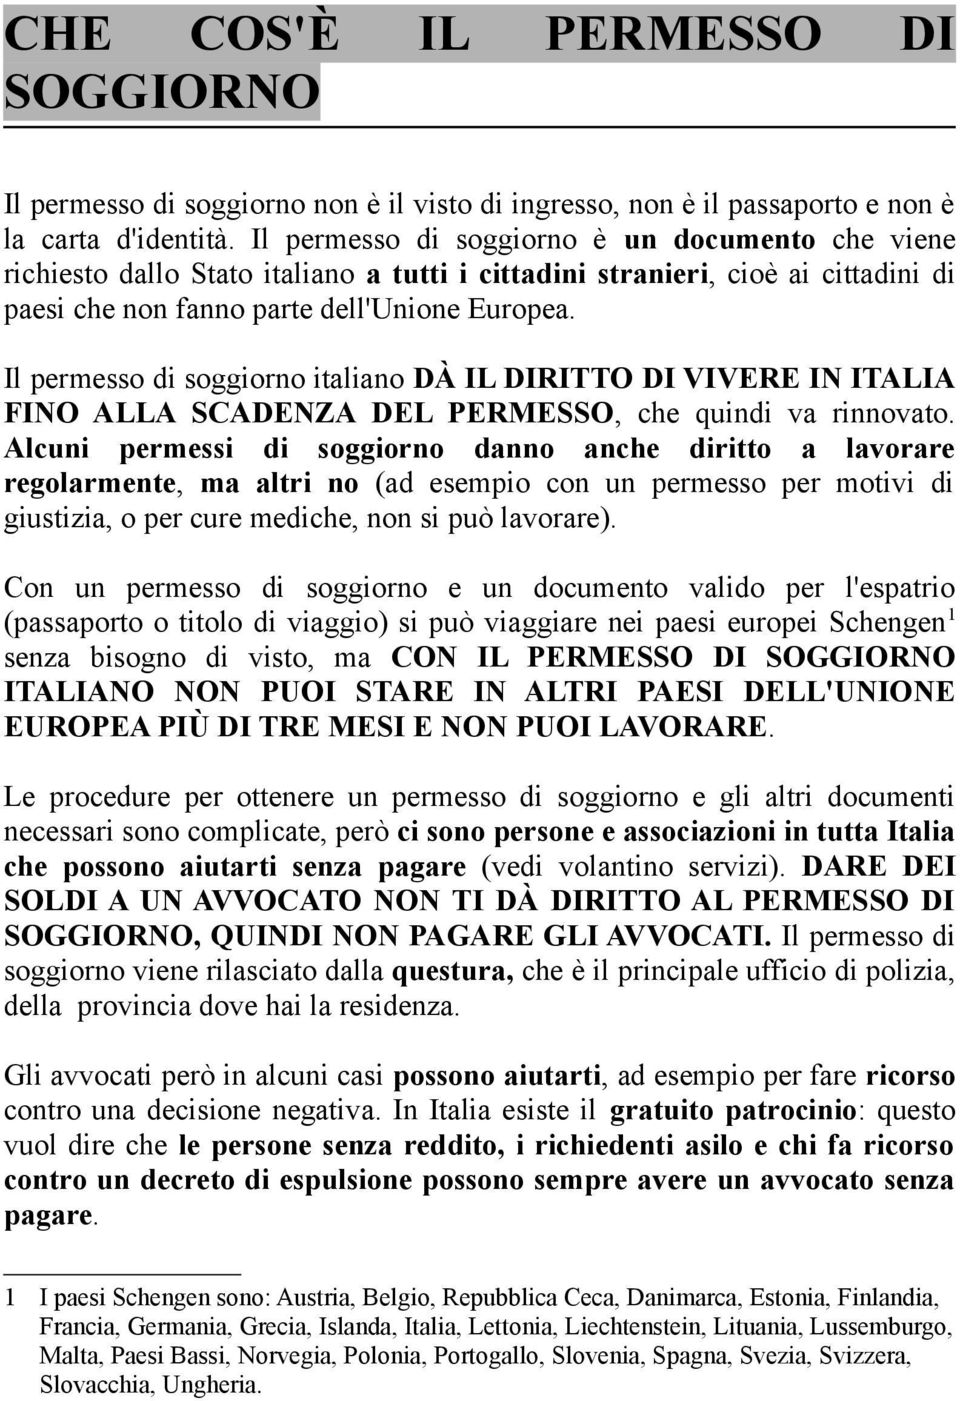 Il permesso di soggiorno italiano DÀ IL DIRITTO DI VIVERE IN ITALIA FINO ALLA SCADENZA DEL PERMESSO, che quindi va rinnovato.